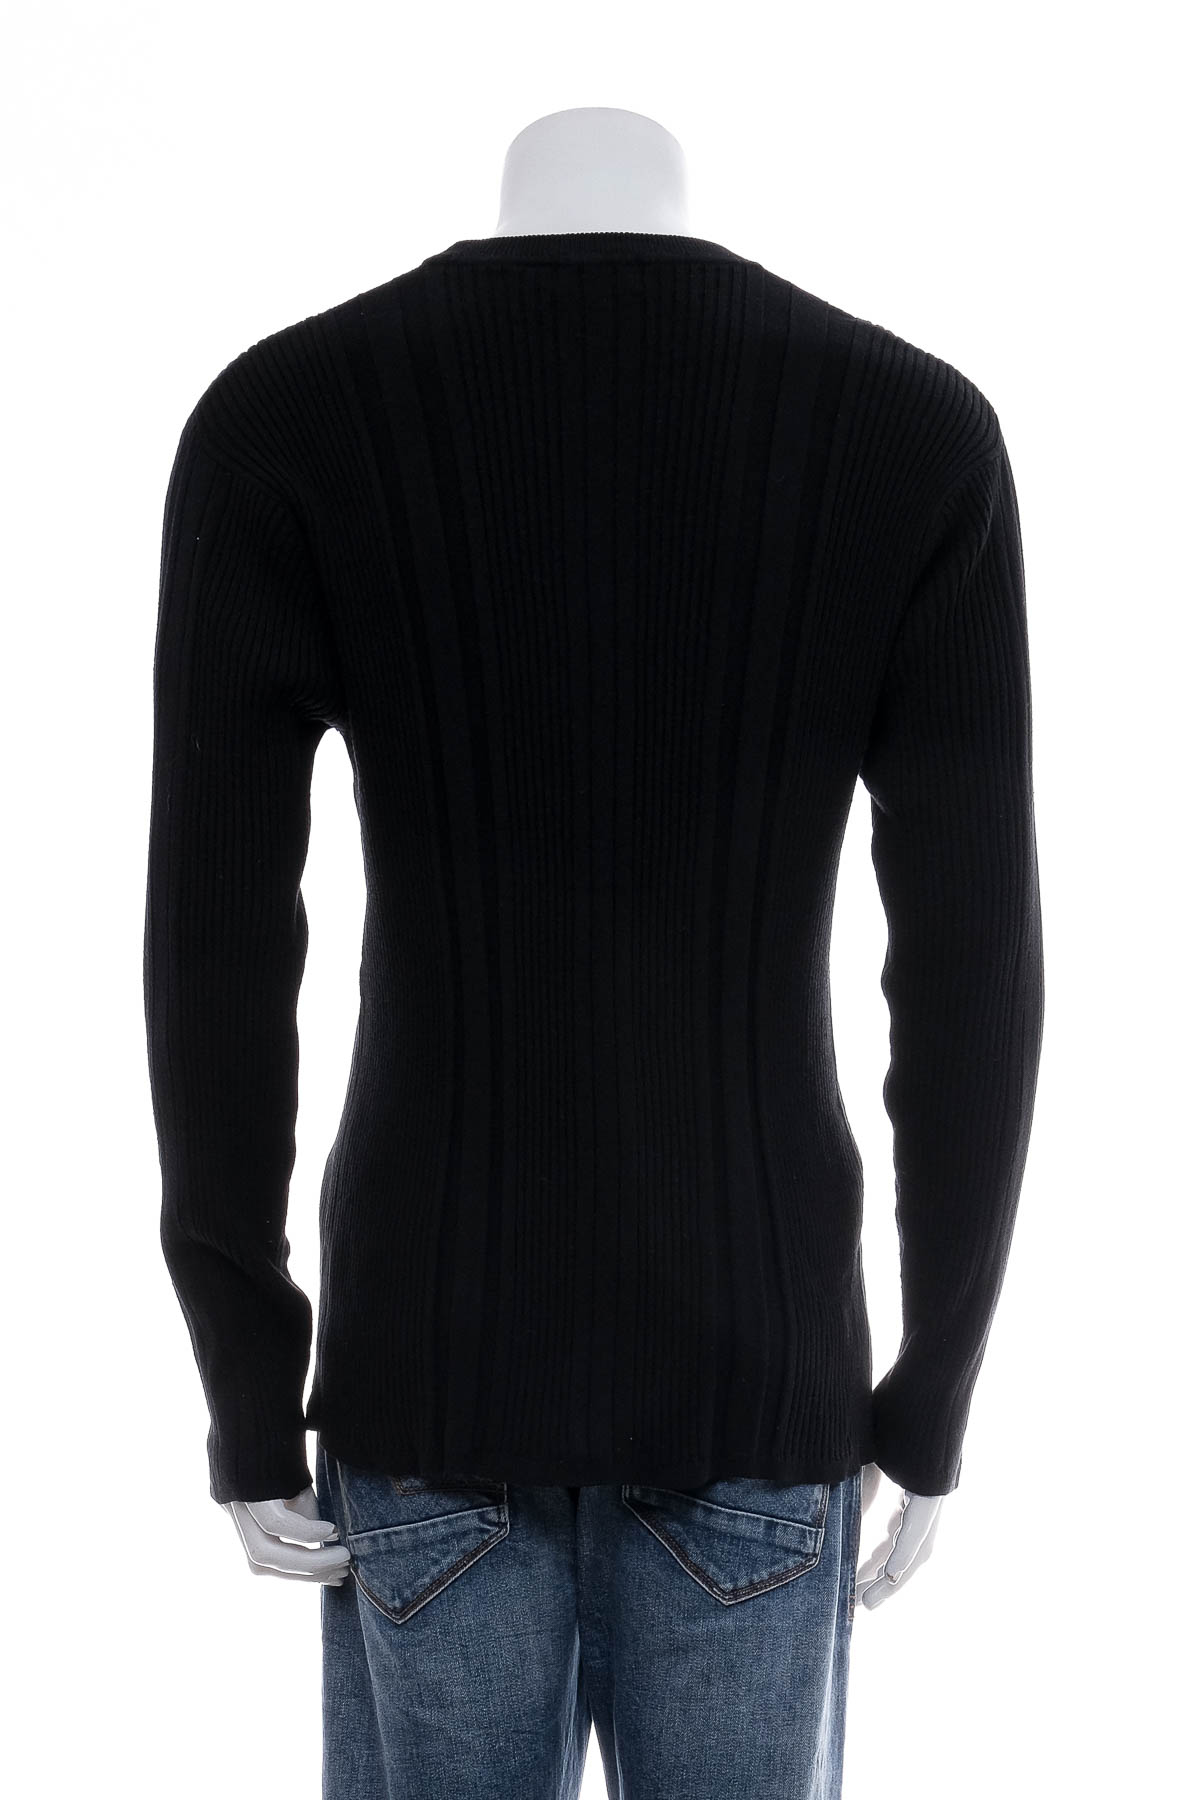 Men's sweater - Axcess - 1